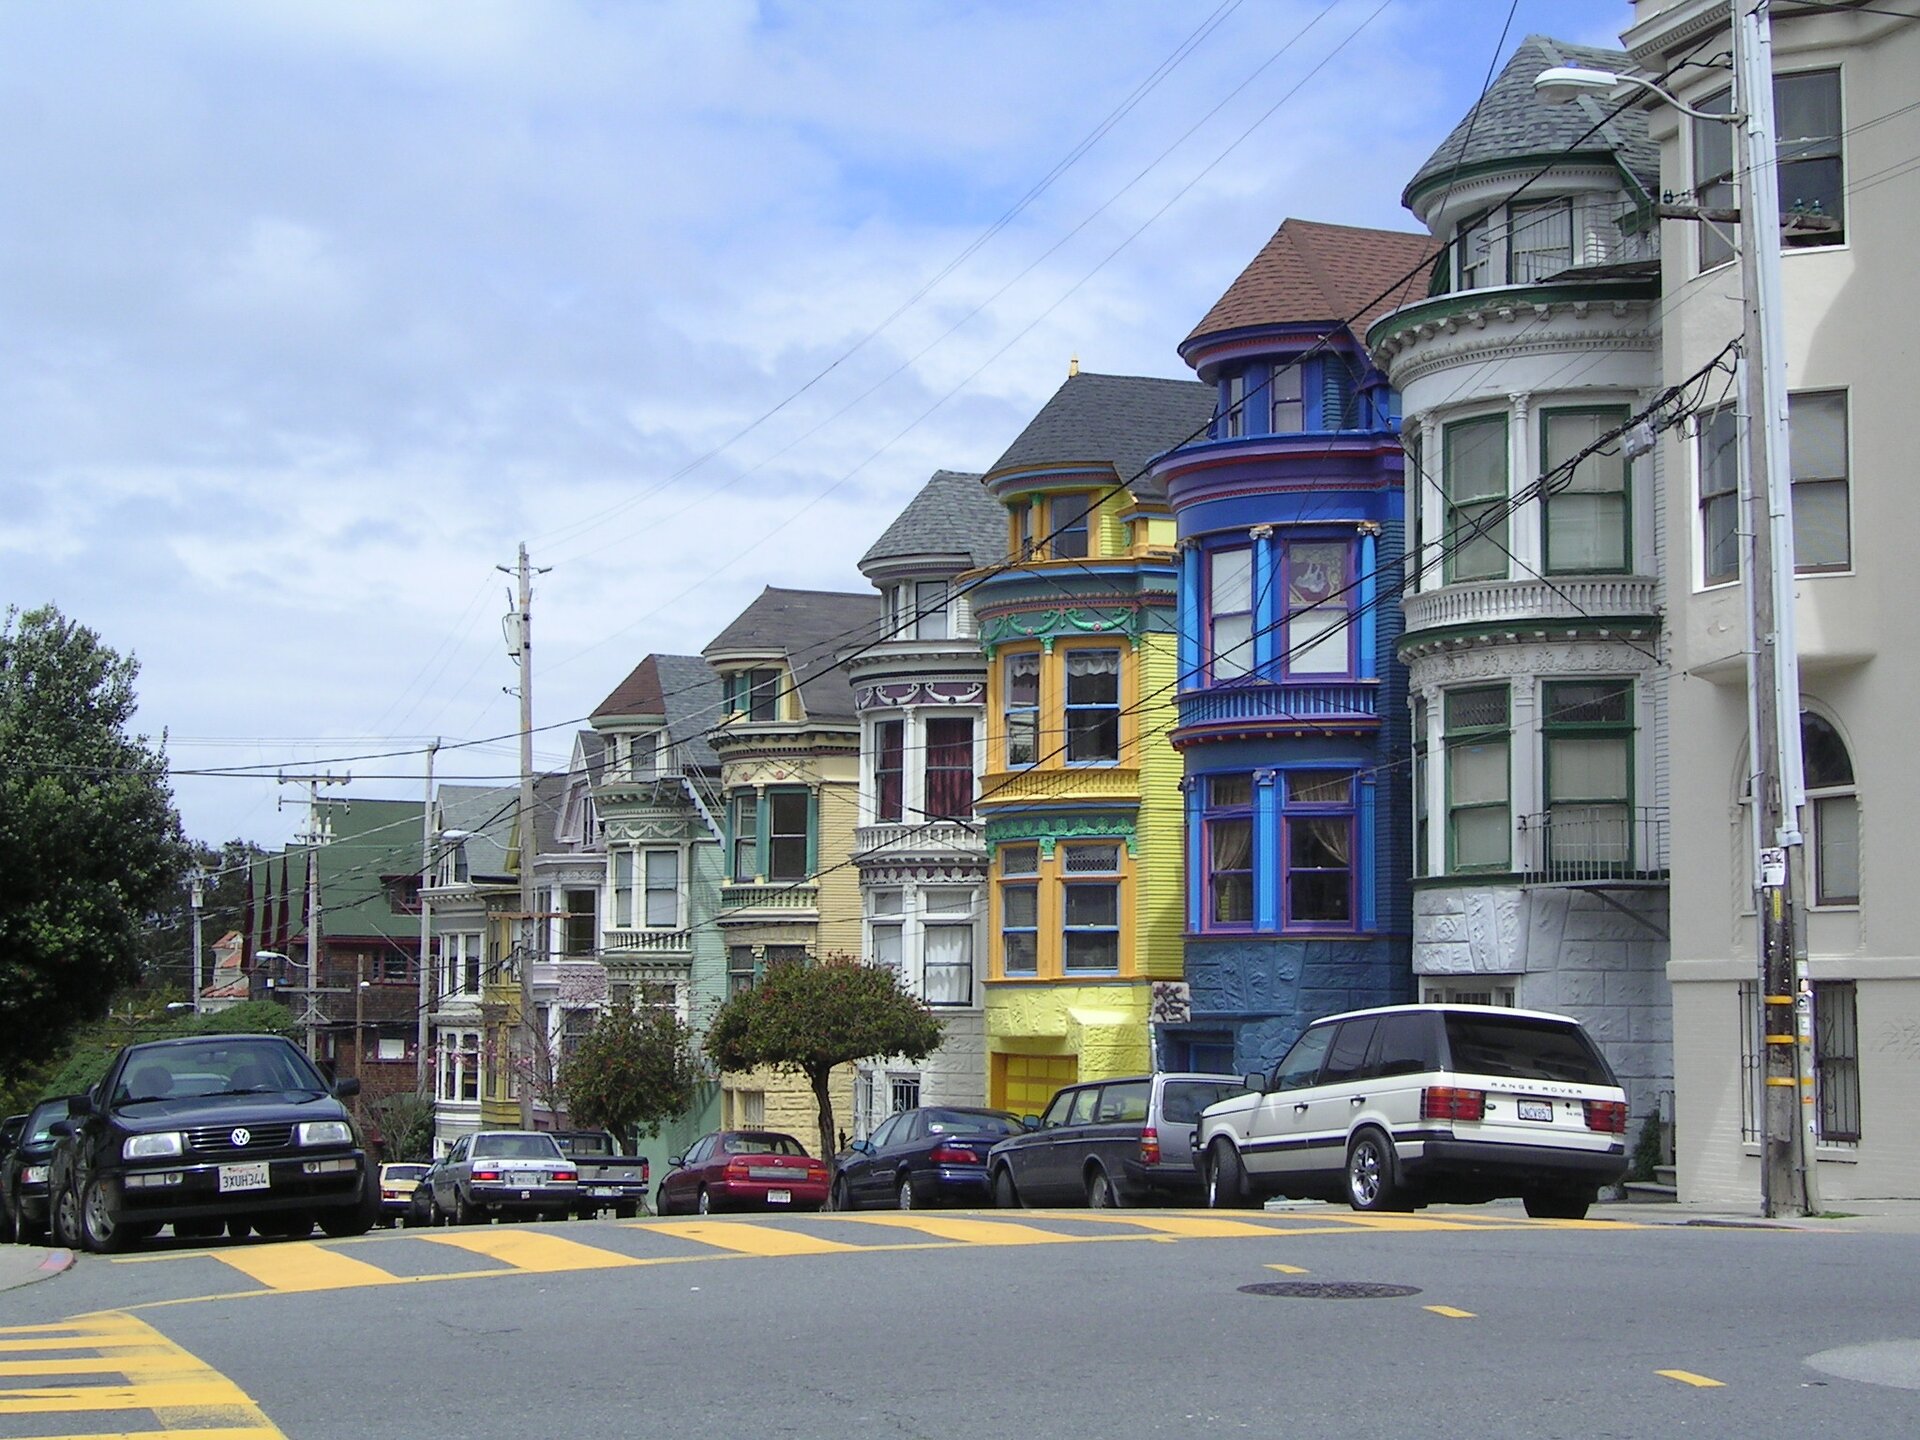 Szeroka ulica z pasami, wzdłuż niej szereg kolorowych budynków o zaokrąglonych kształtach, mnóstwo okien. Na ulicy jadące samochody.